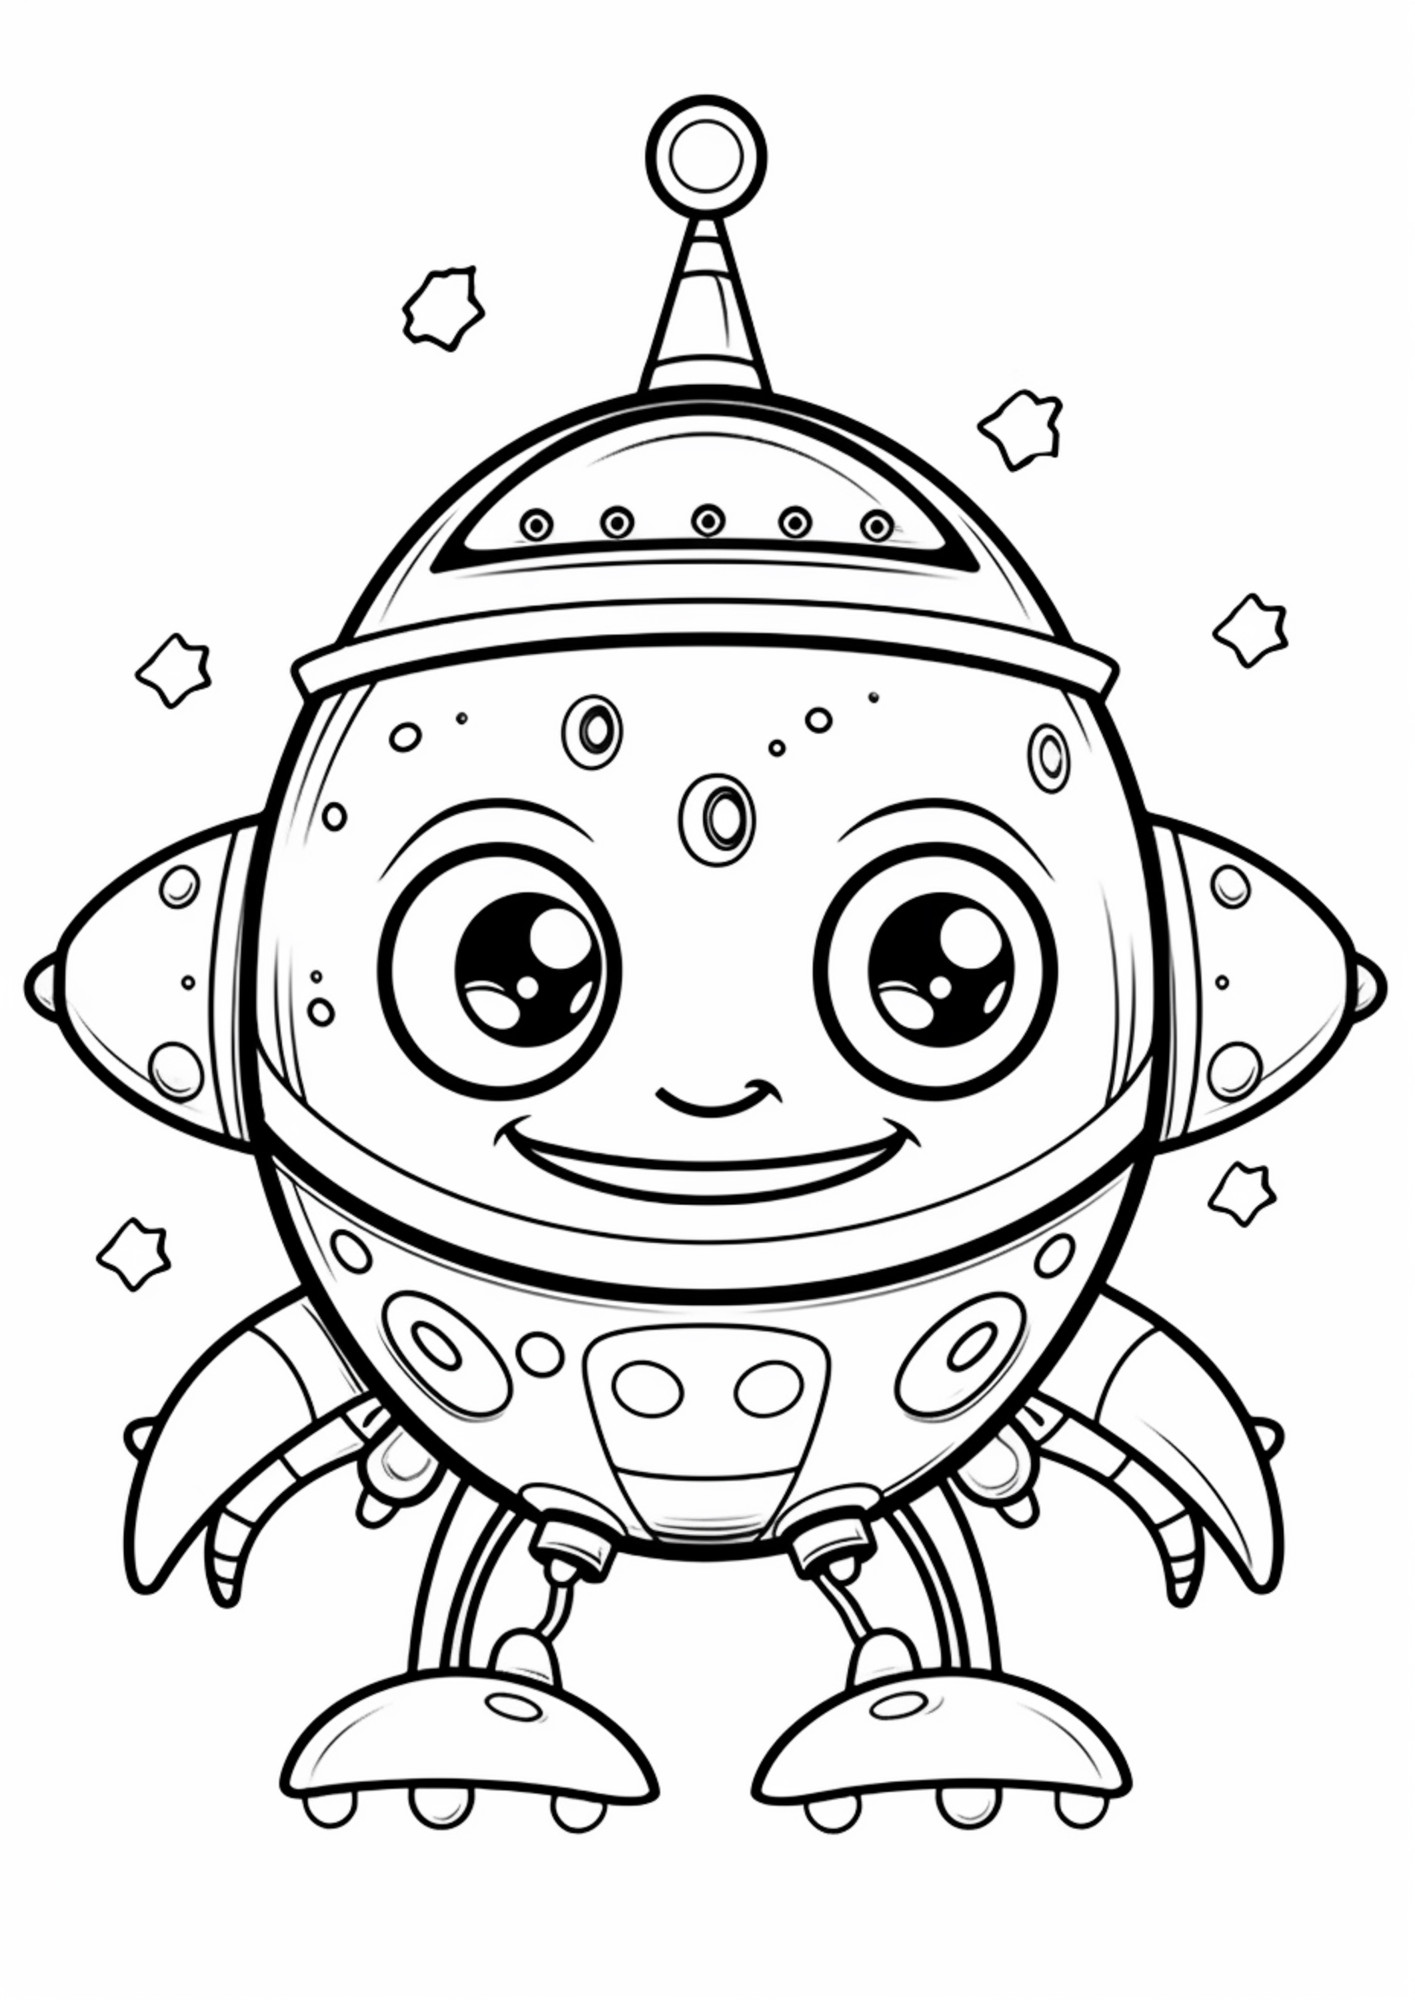 Раскраска для детей: сказочный робот с большими глазами и ушами